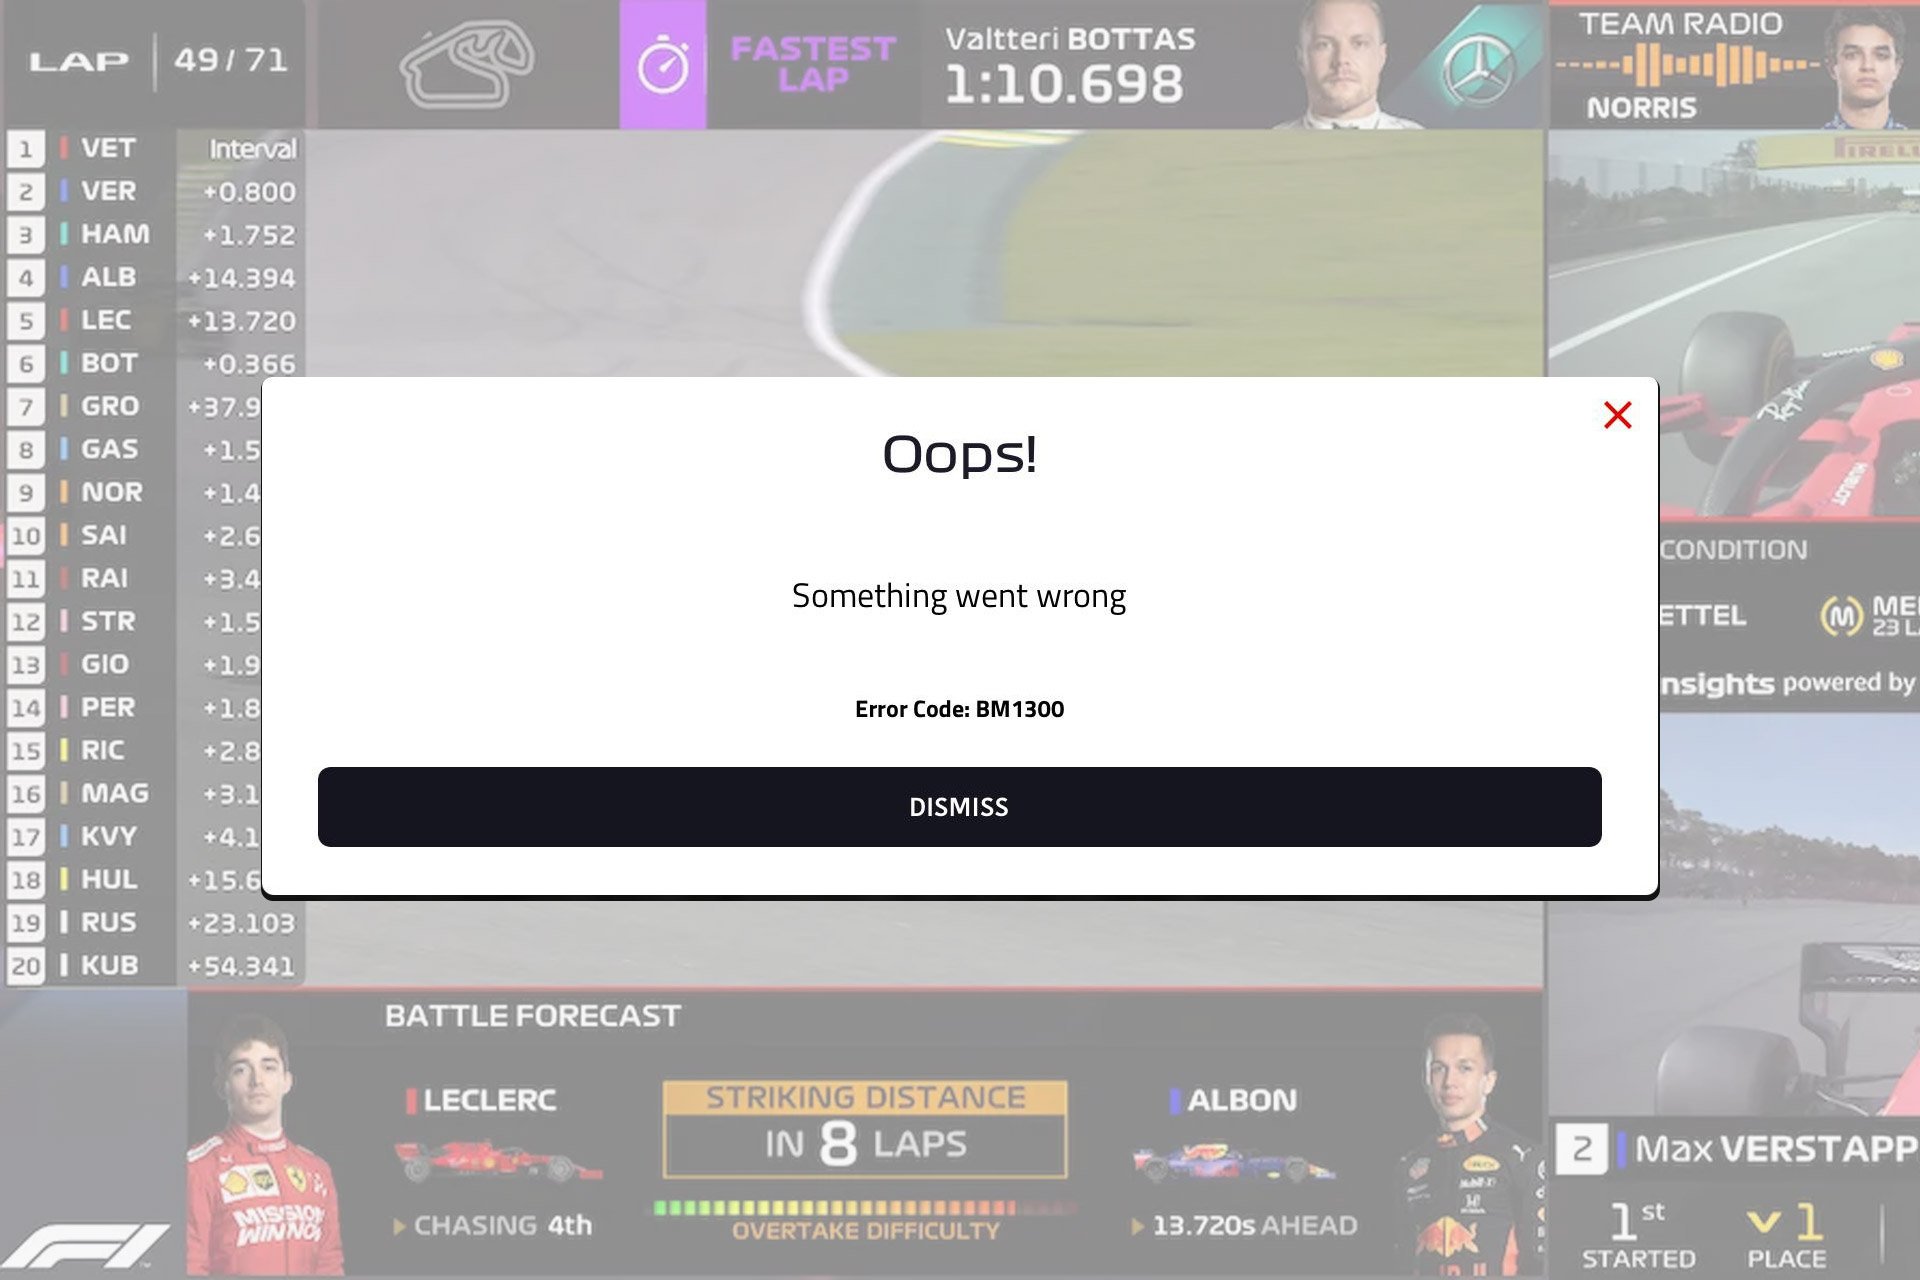 F1 TV BM1300 Error: 3 Ways to Get it Working Again